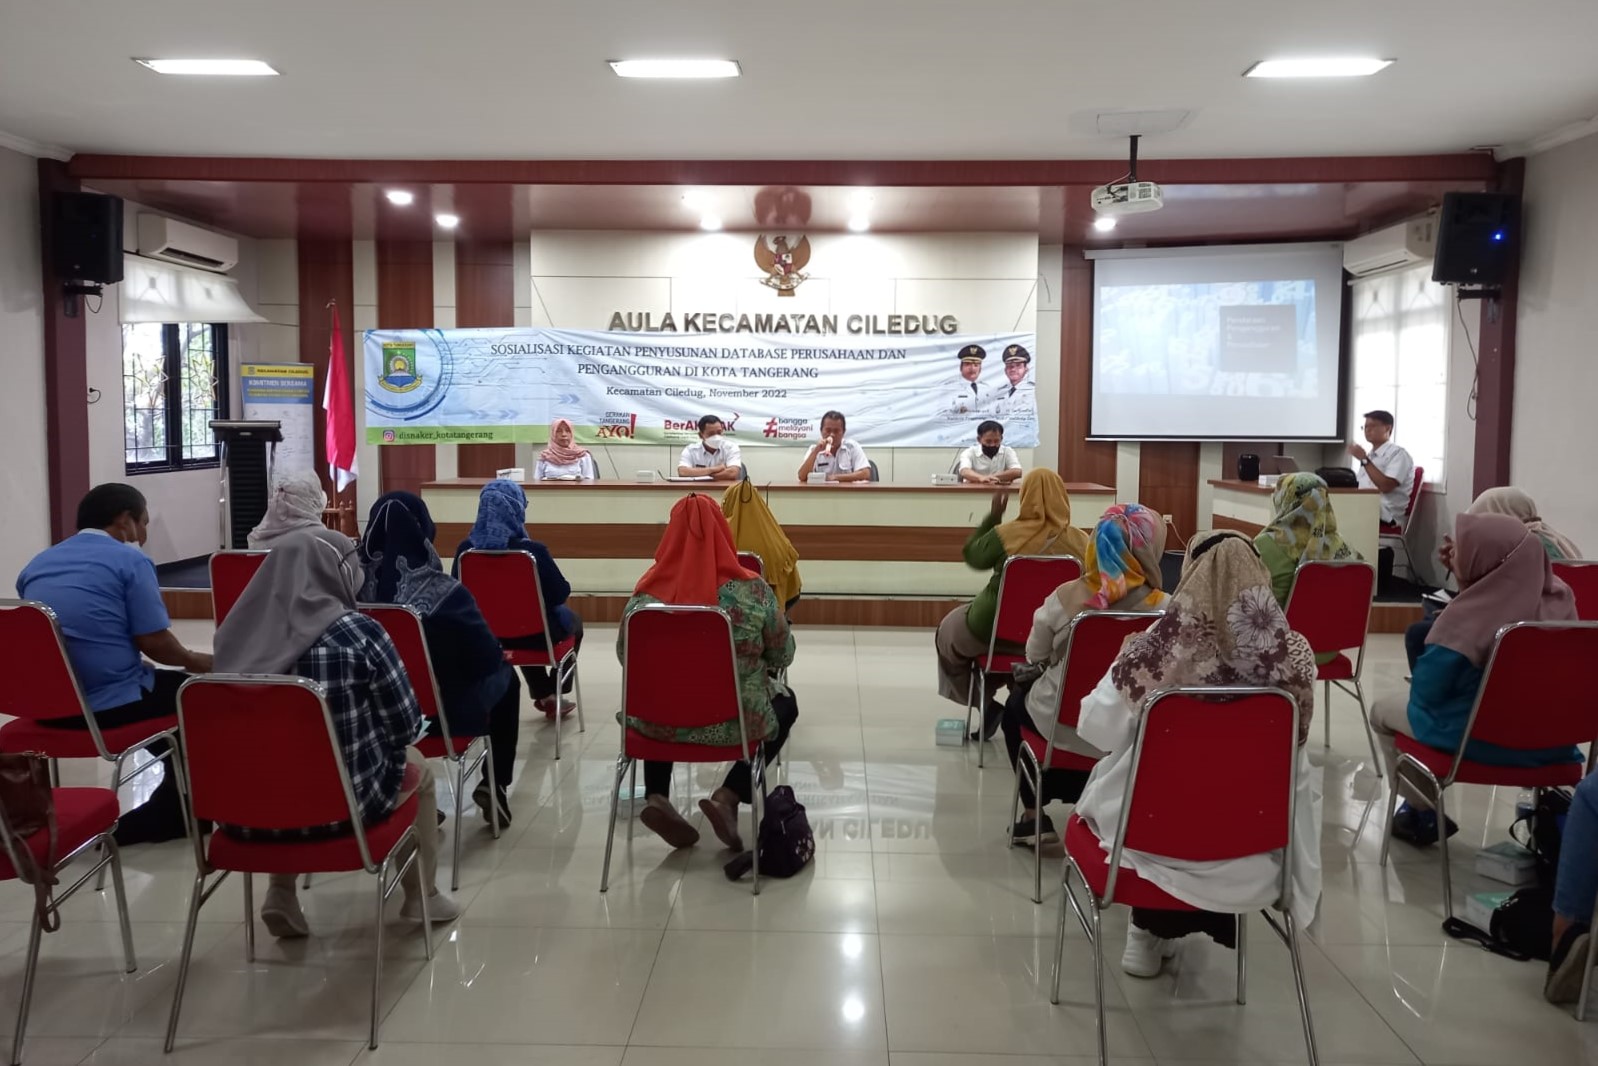 Sosialisasi Penyusunan Database Perusahaan dan Pengangguran oleh Disnaker Kota Tangerang